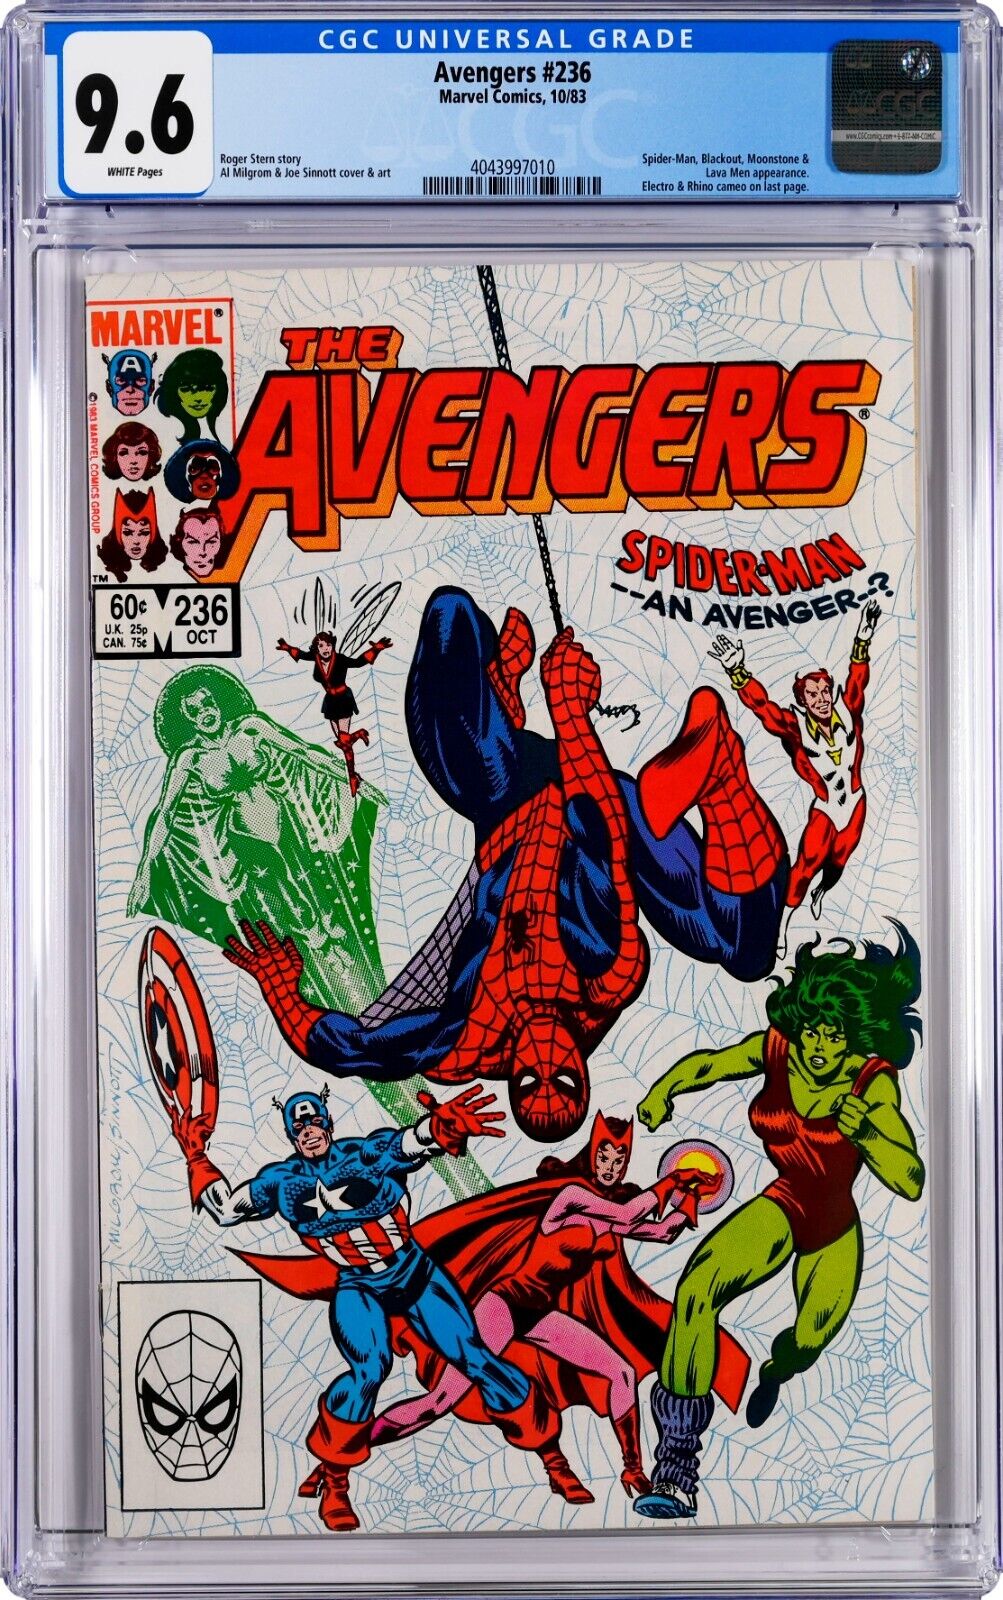 Avengers #236 CGC 9.6 (Oct 1983, Marvel) Milgrom & Sinnott, Spider-Man, She-Hulk